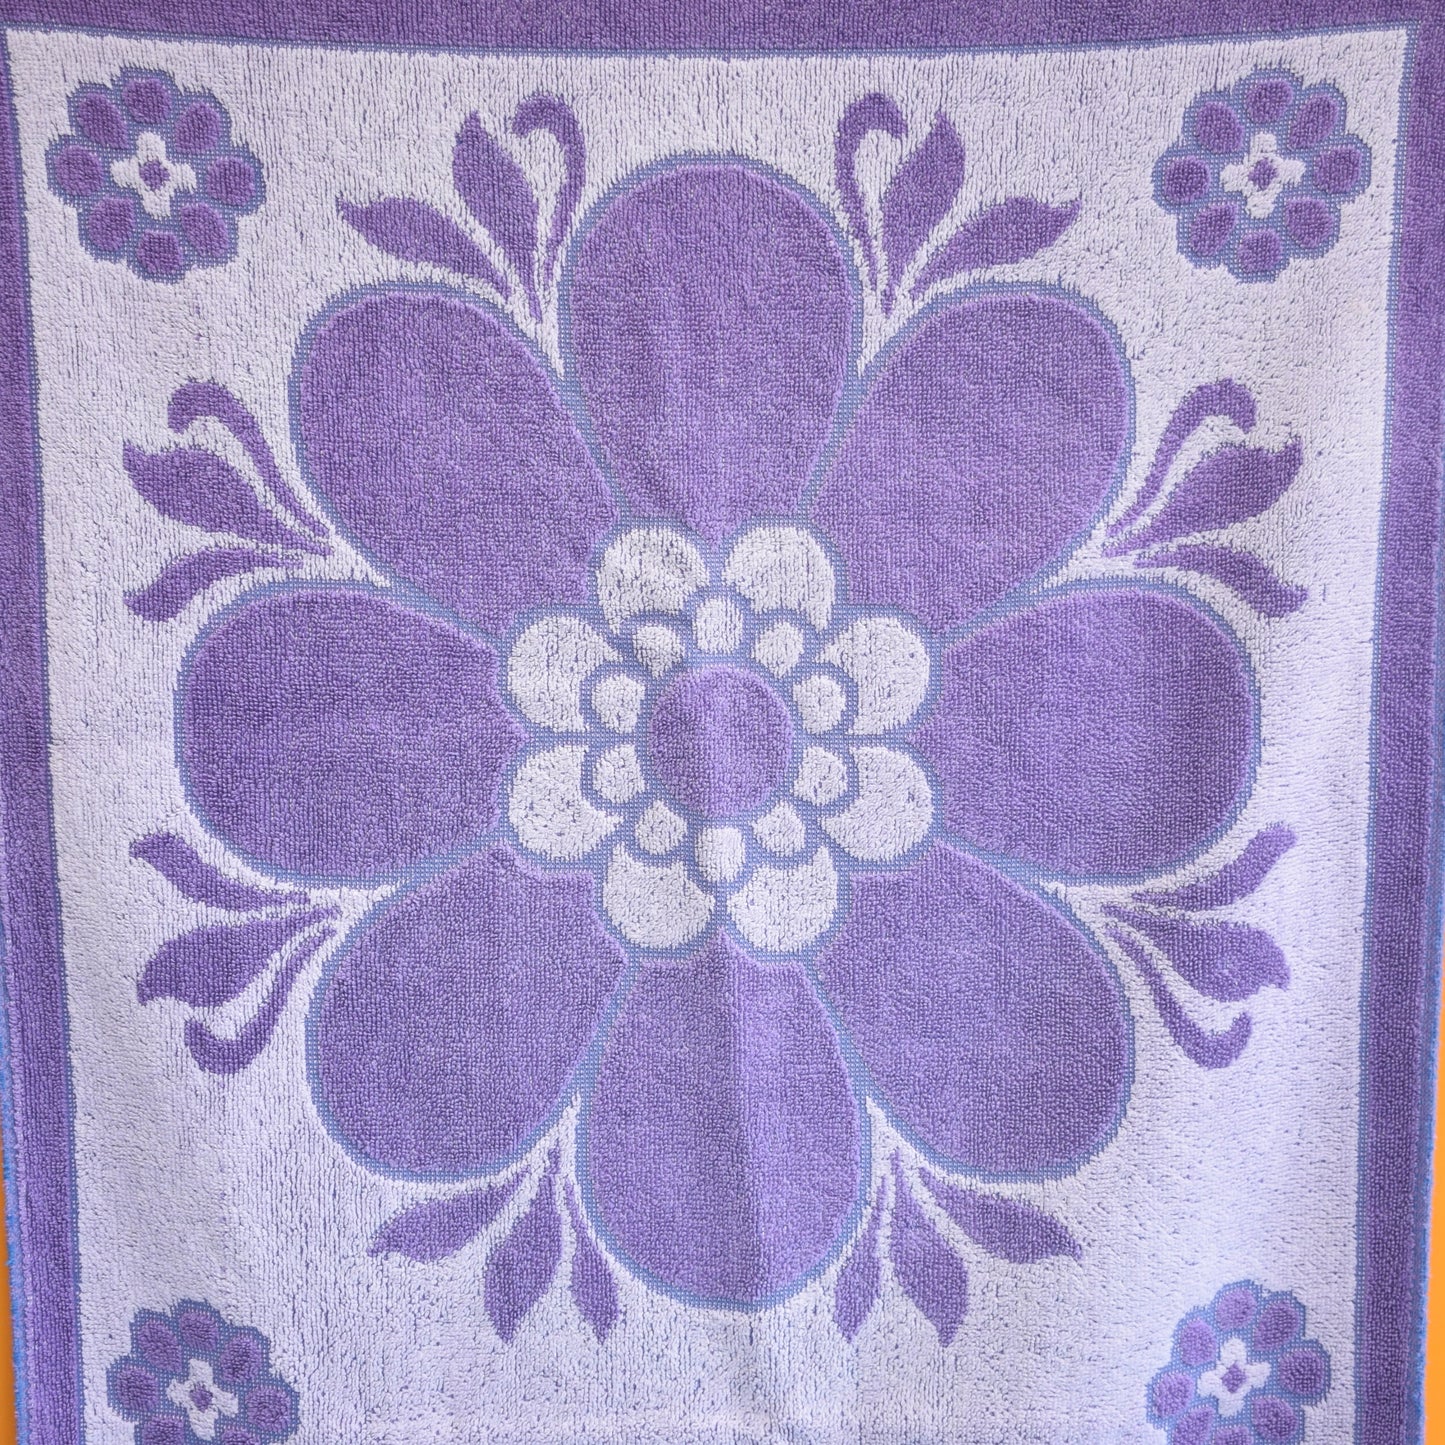 Vintage 1960s Cotton Bath Towel - Purple Flower